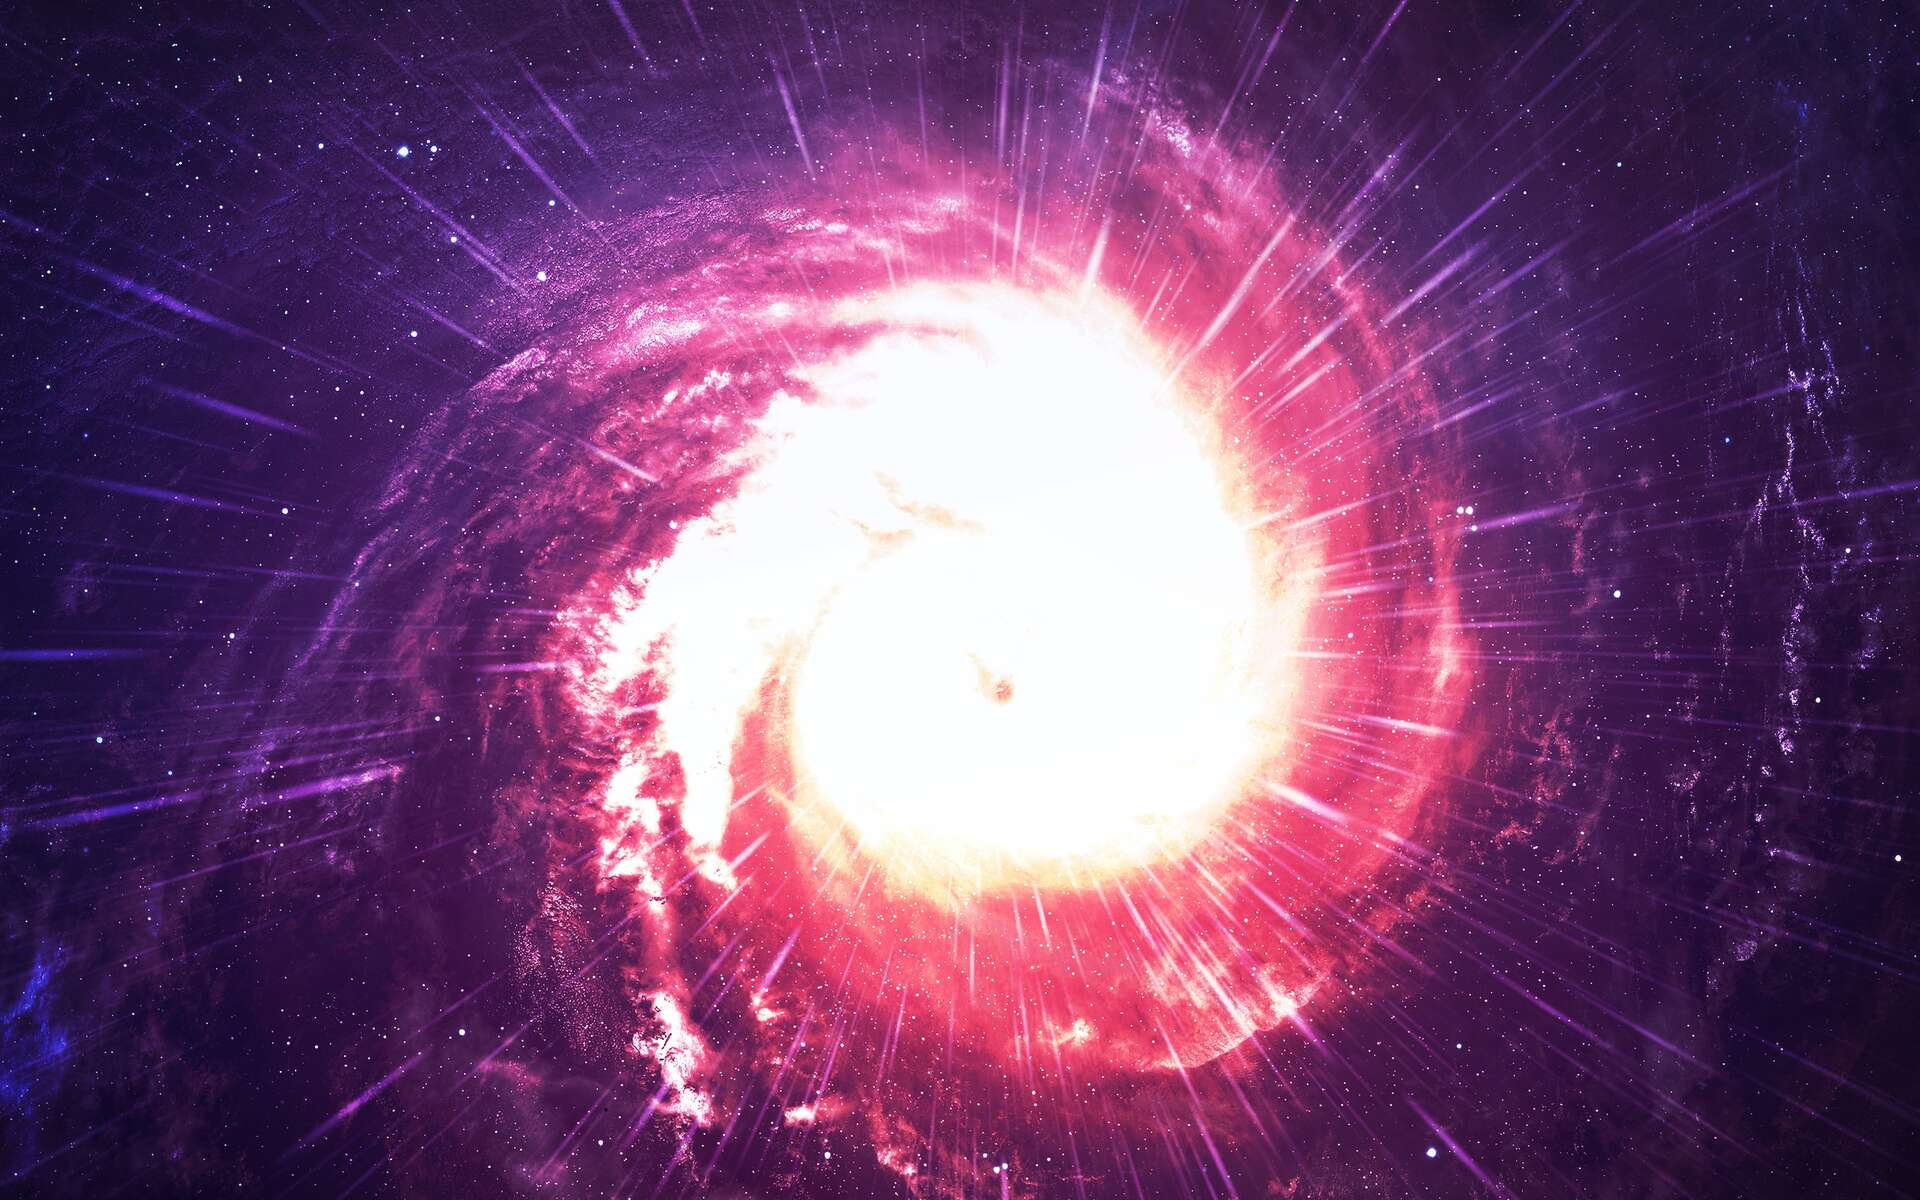 Trou noir supermassif : le télescope James-Webb détecte le plus lointain noyau actif de galaxies connu